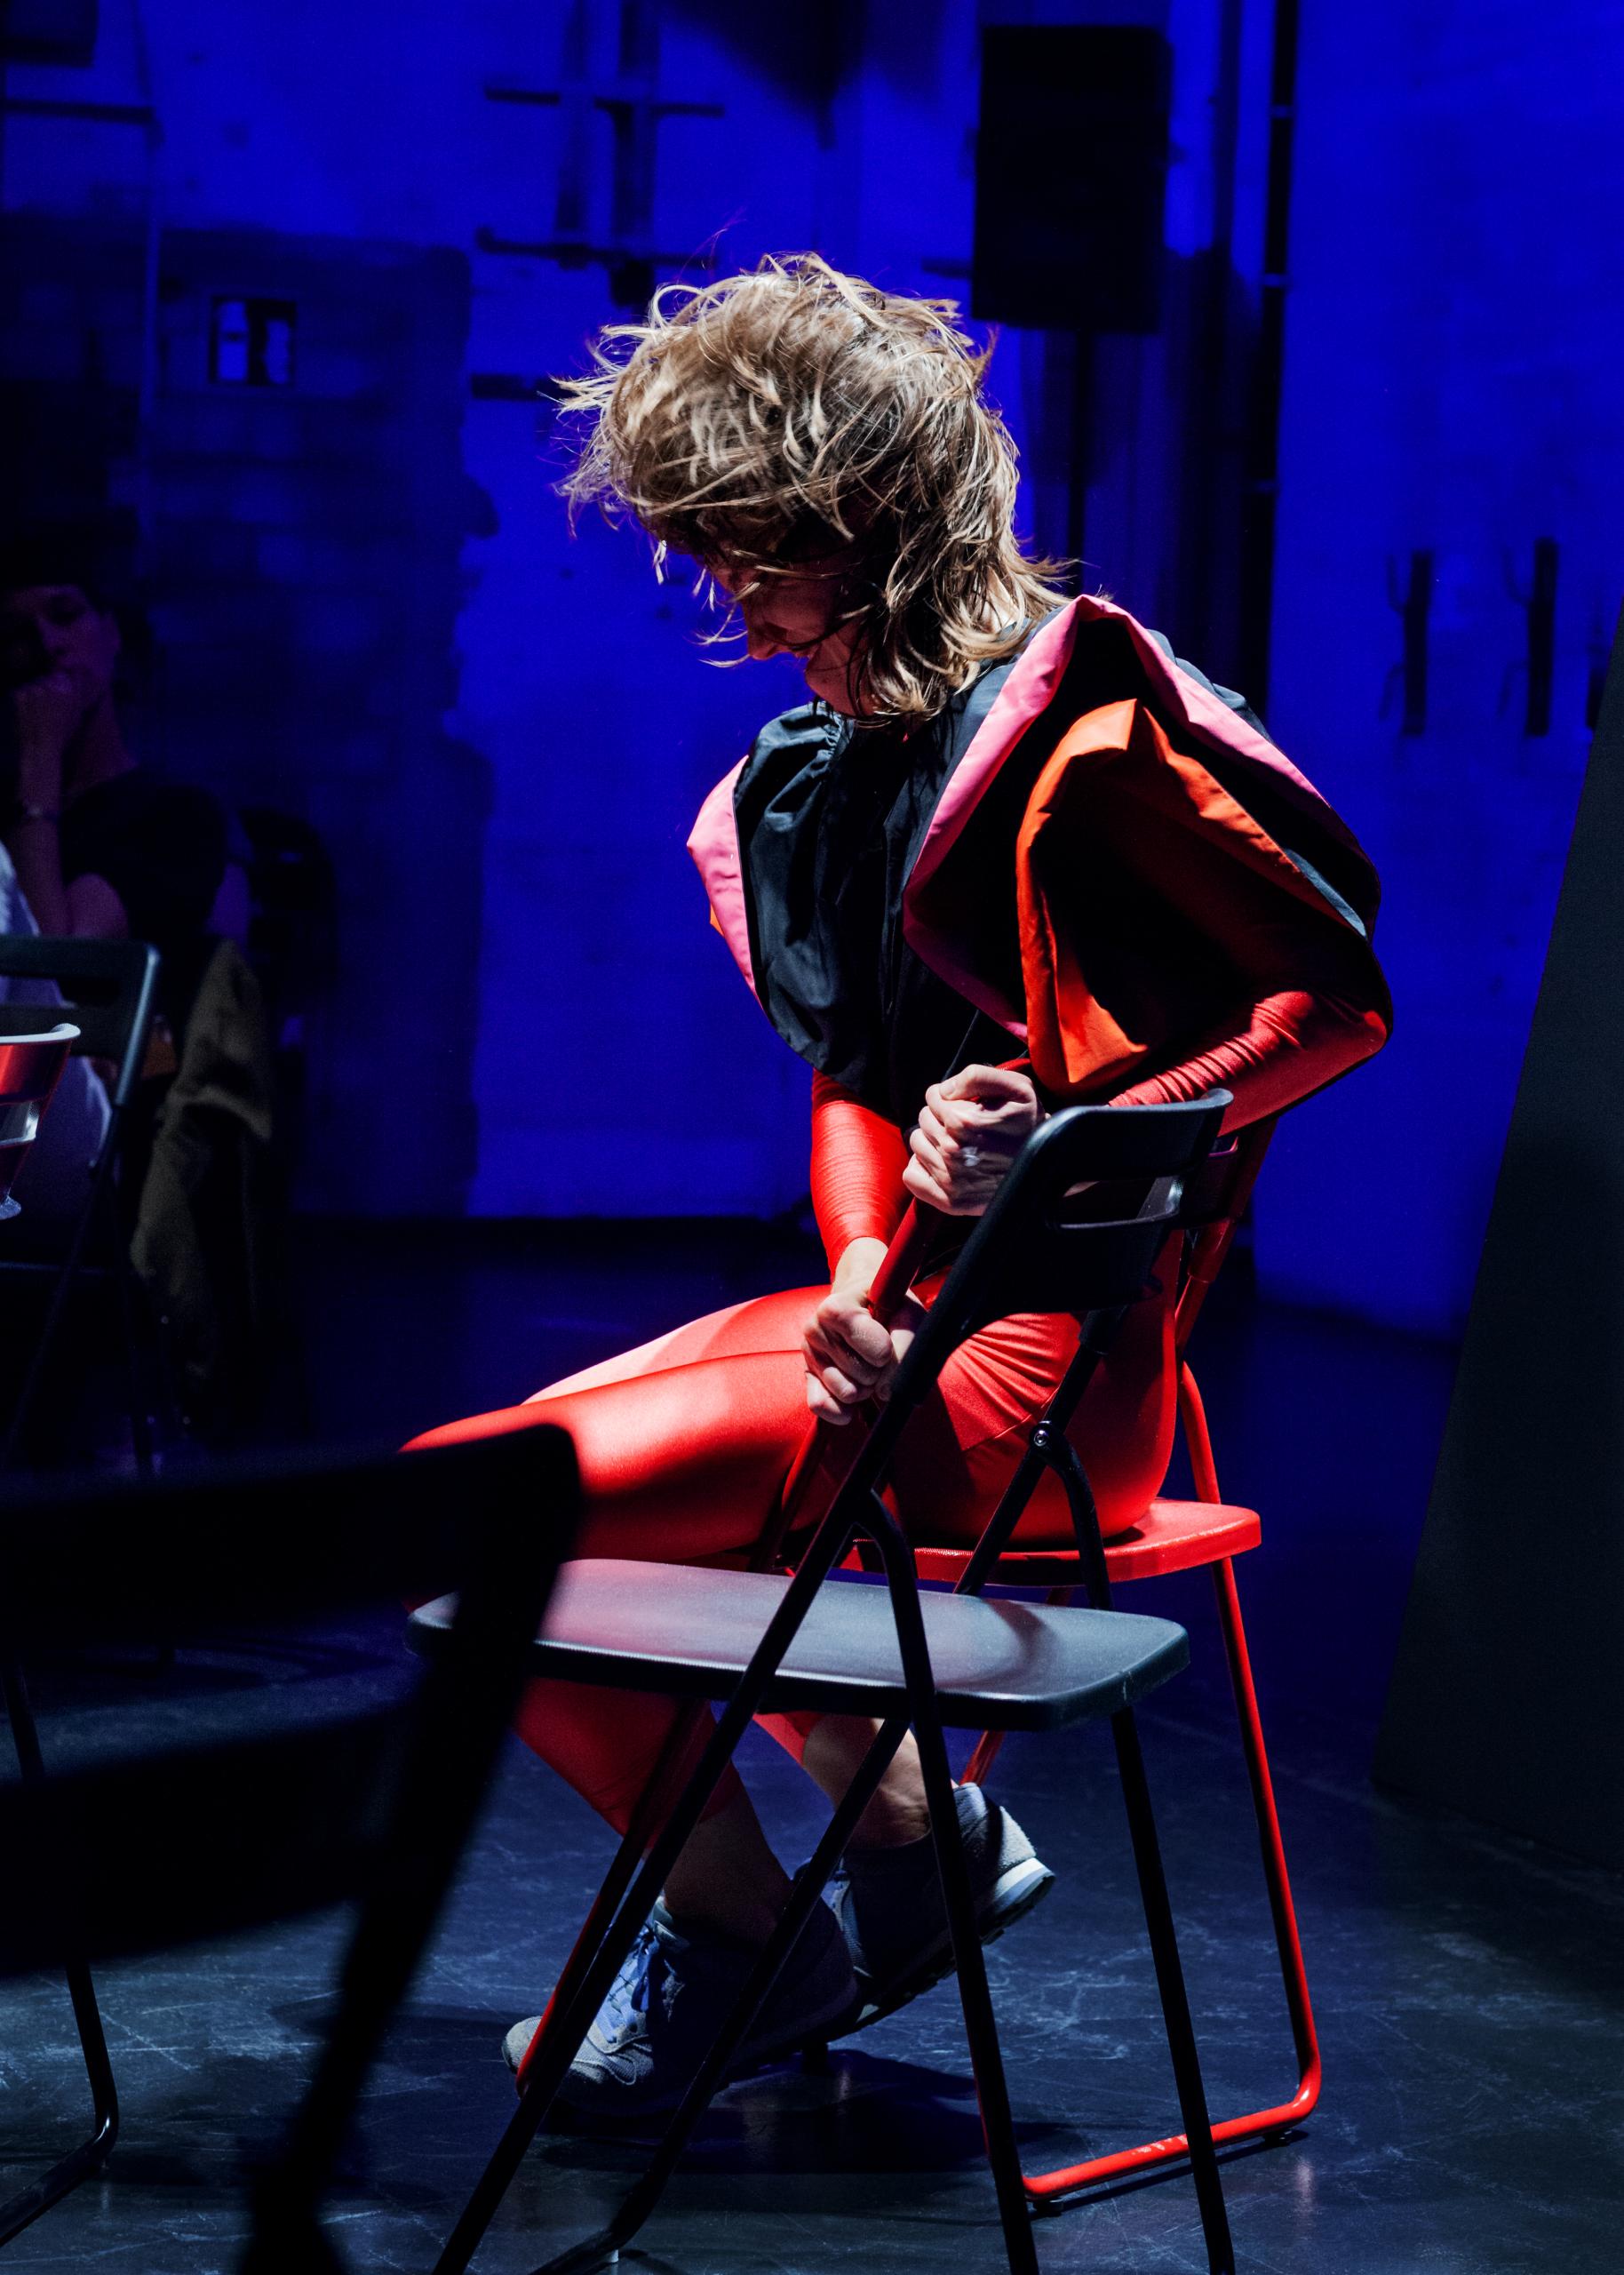 Blau beleuchtete Bühne, eine Frau in rotem Kostüm sitzt auf einem Klappstuhl